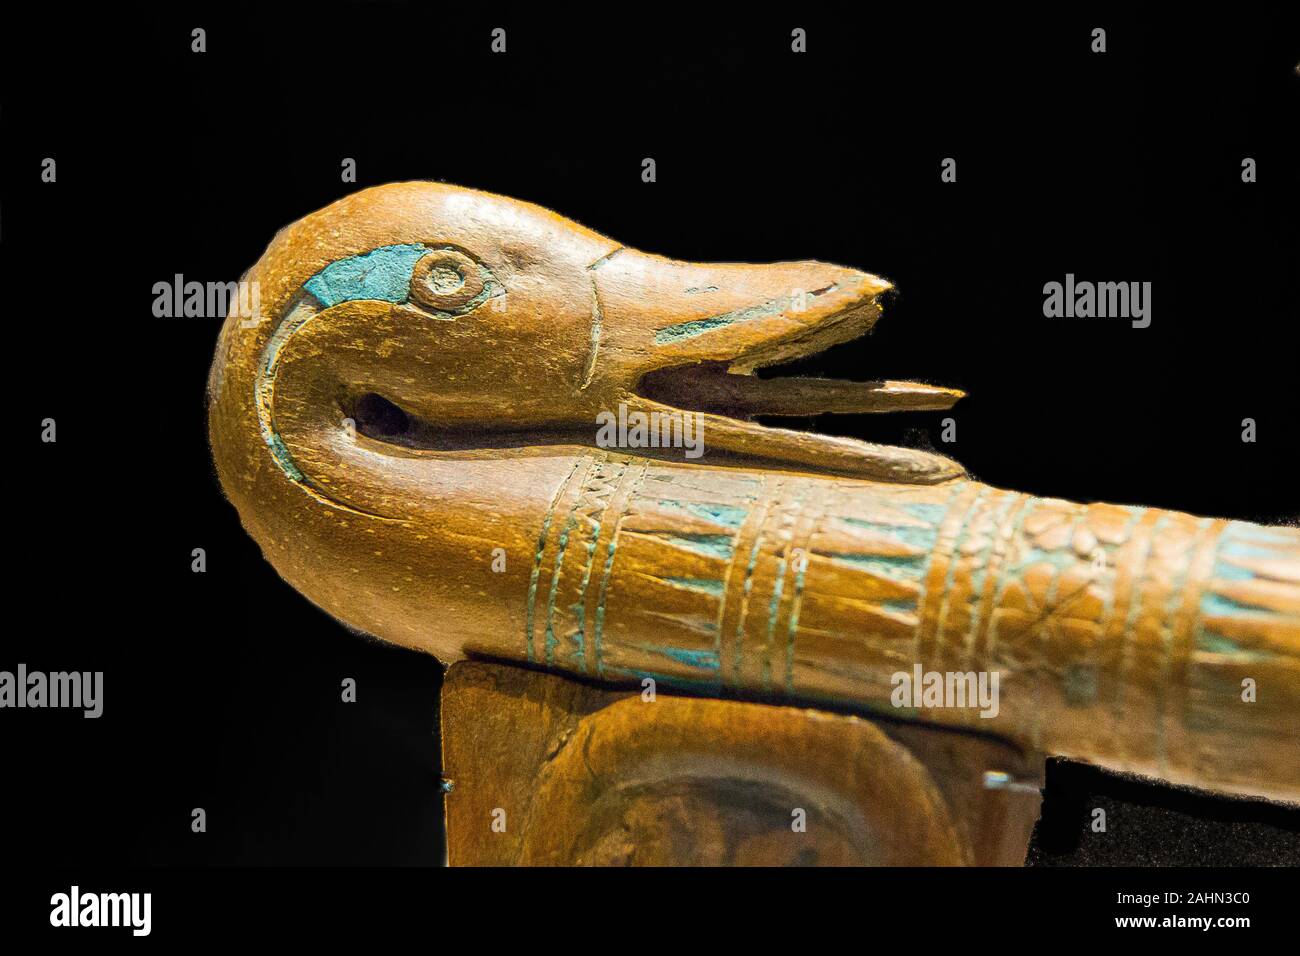 Ausstellung "Das Reich der Tiere im Alten Ägypten", im Jahr 2015 durch das Louvre Museum organisiert. Detail einer Leier, Ente Kopf, Neues Reich, Holz, N 875. Stockfoto